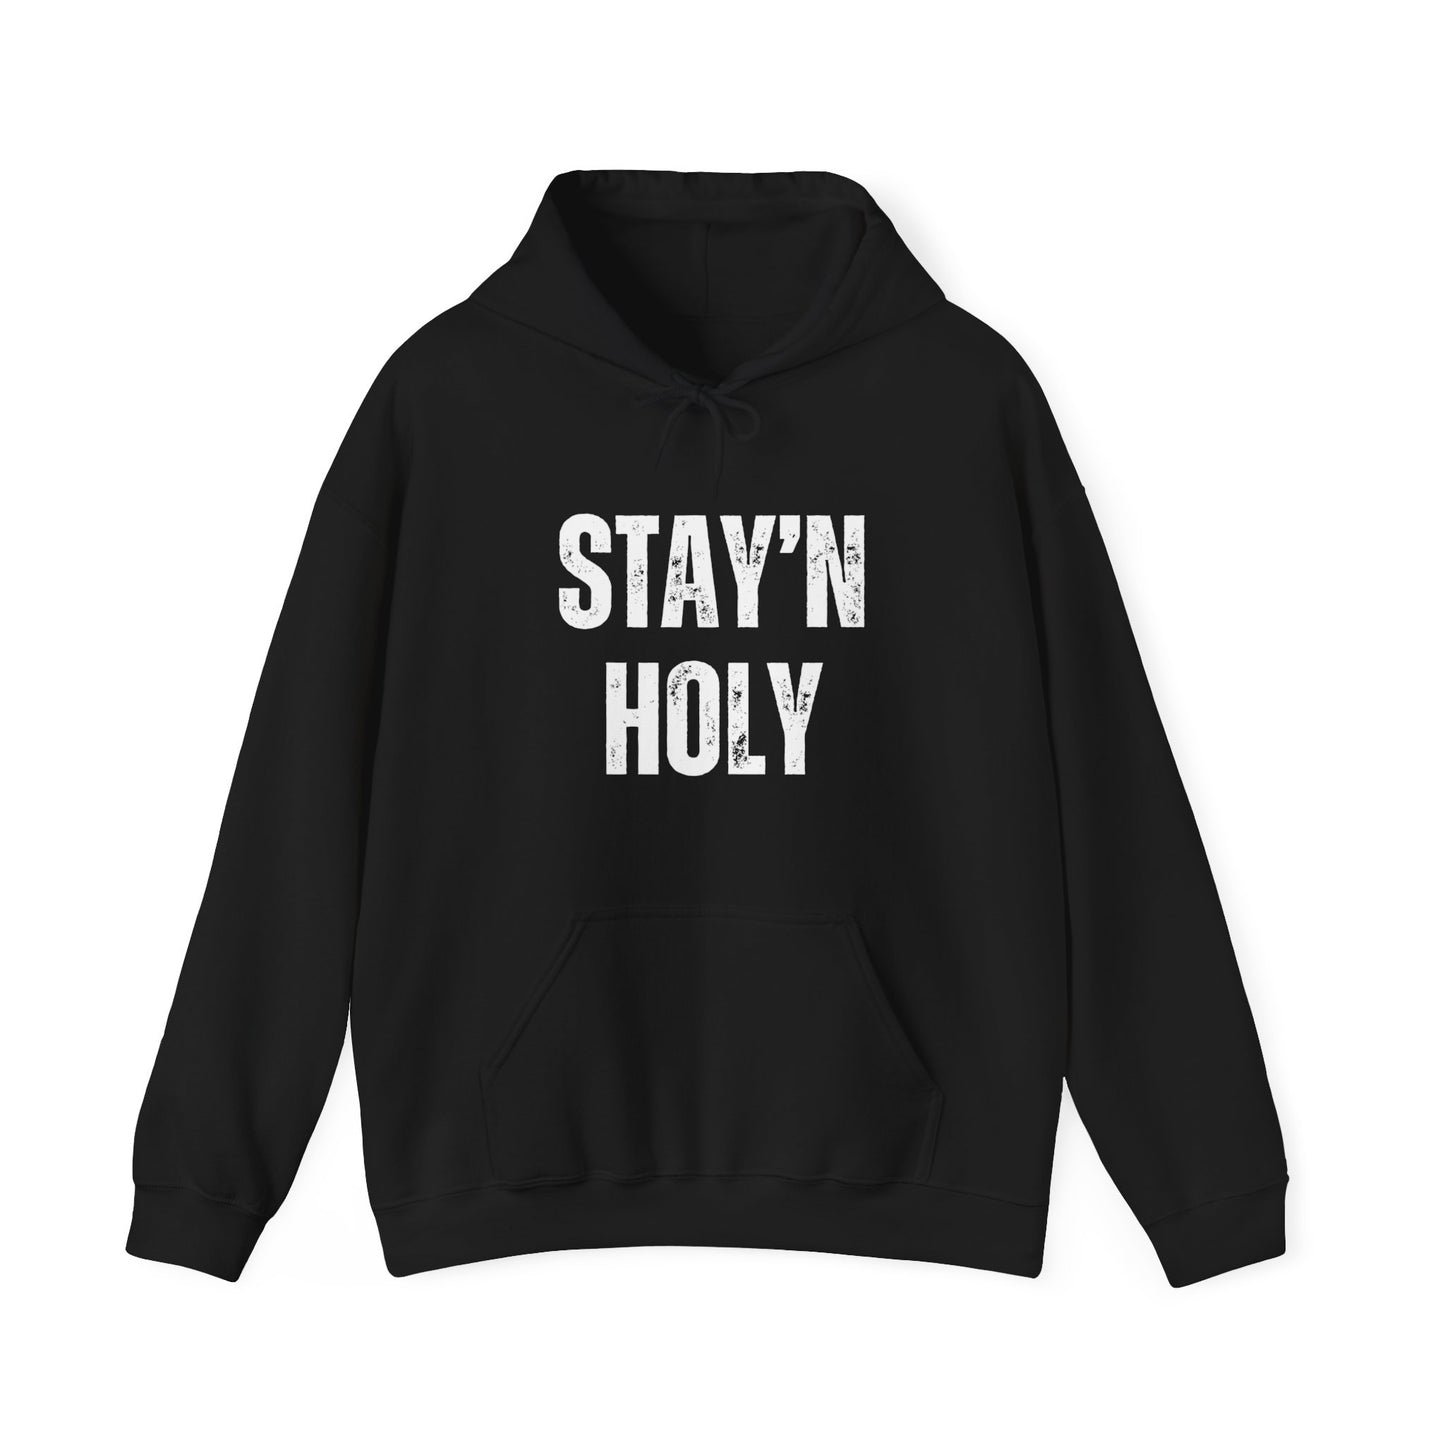 Stay'n Holy Hoodie